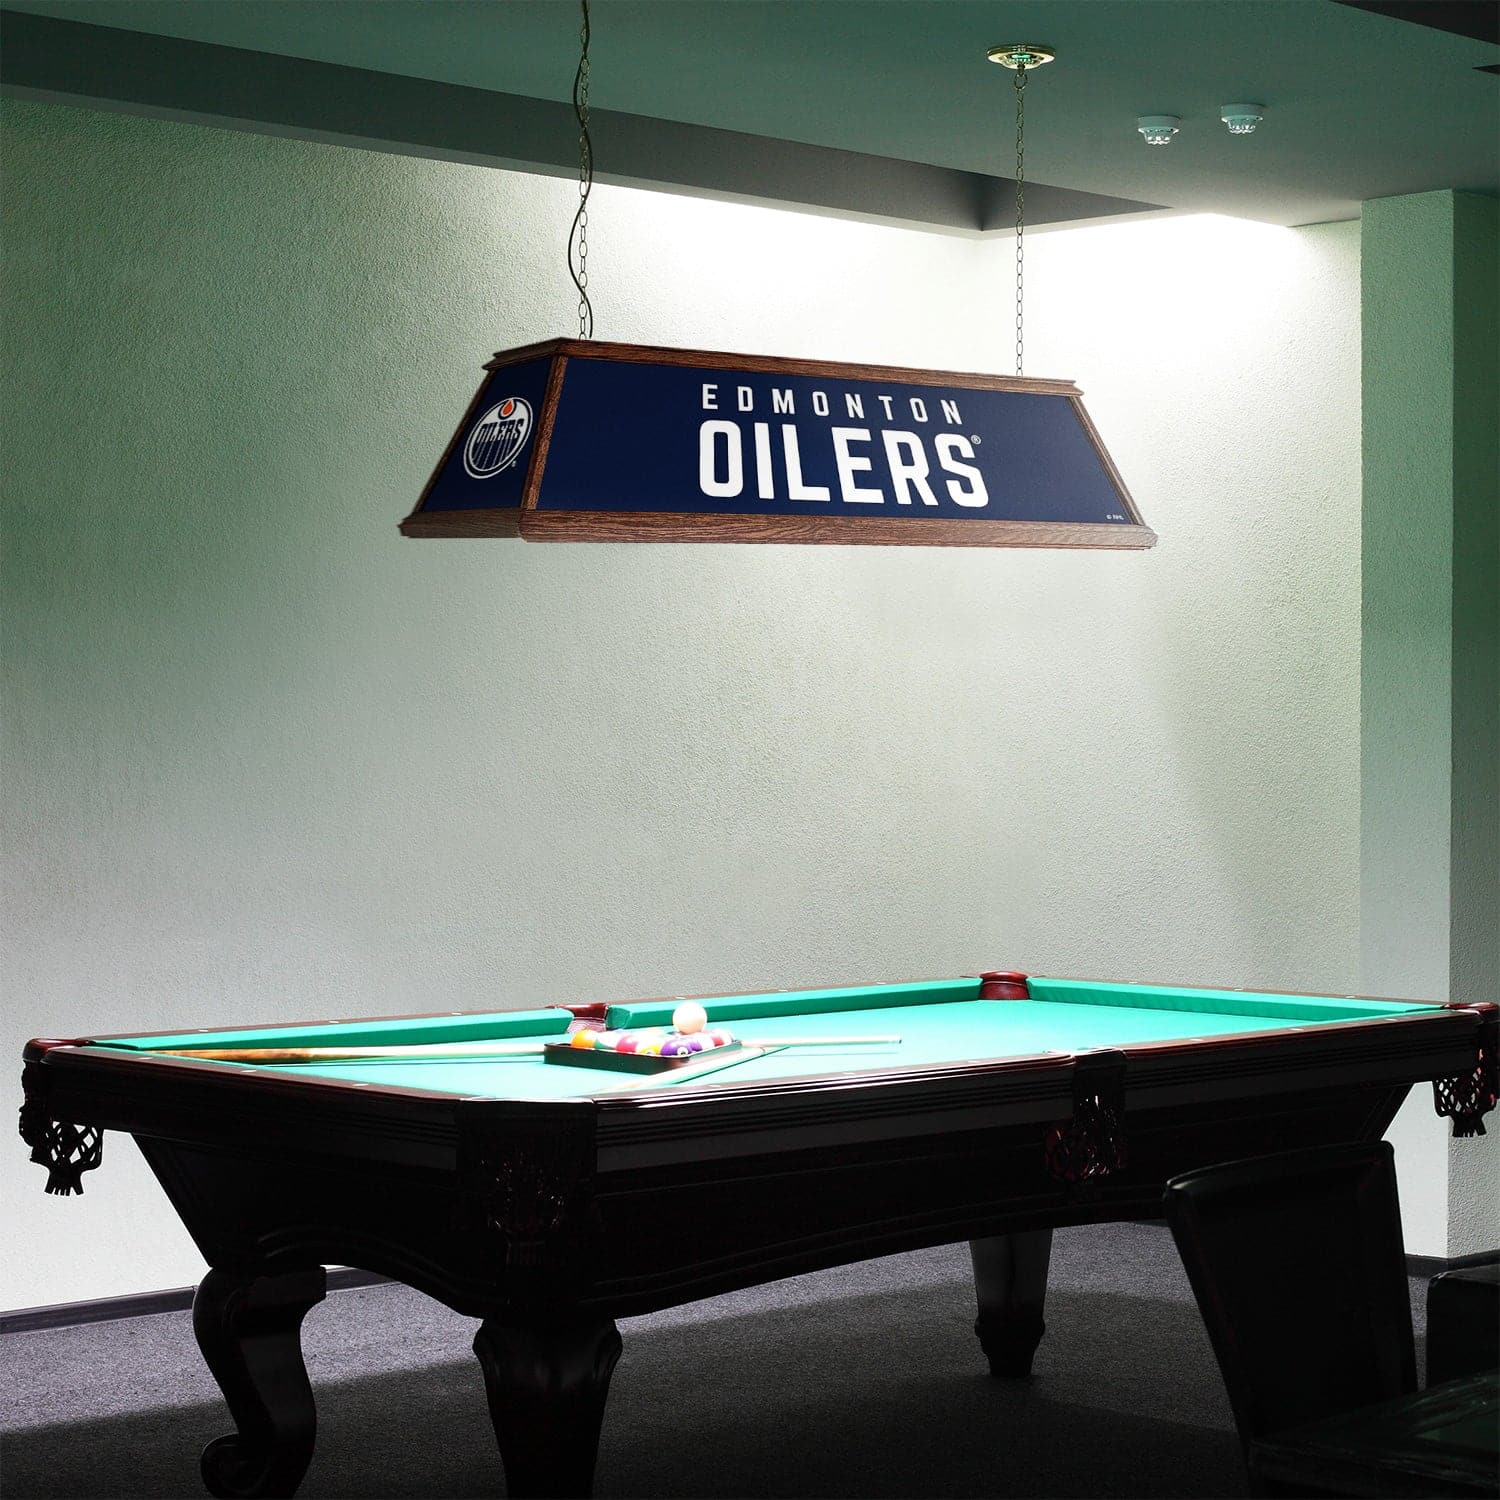 Edmonton Oilers Premium Wood Pool Table Light